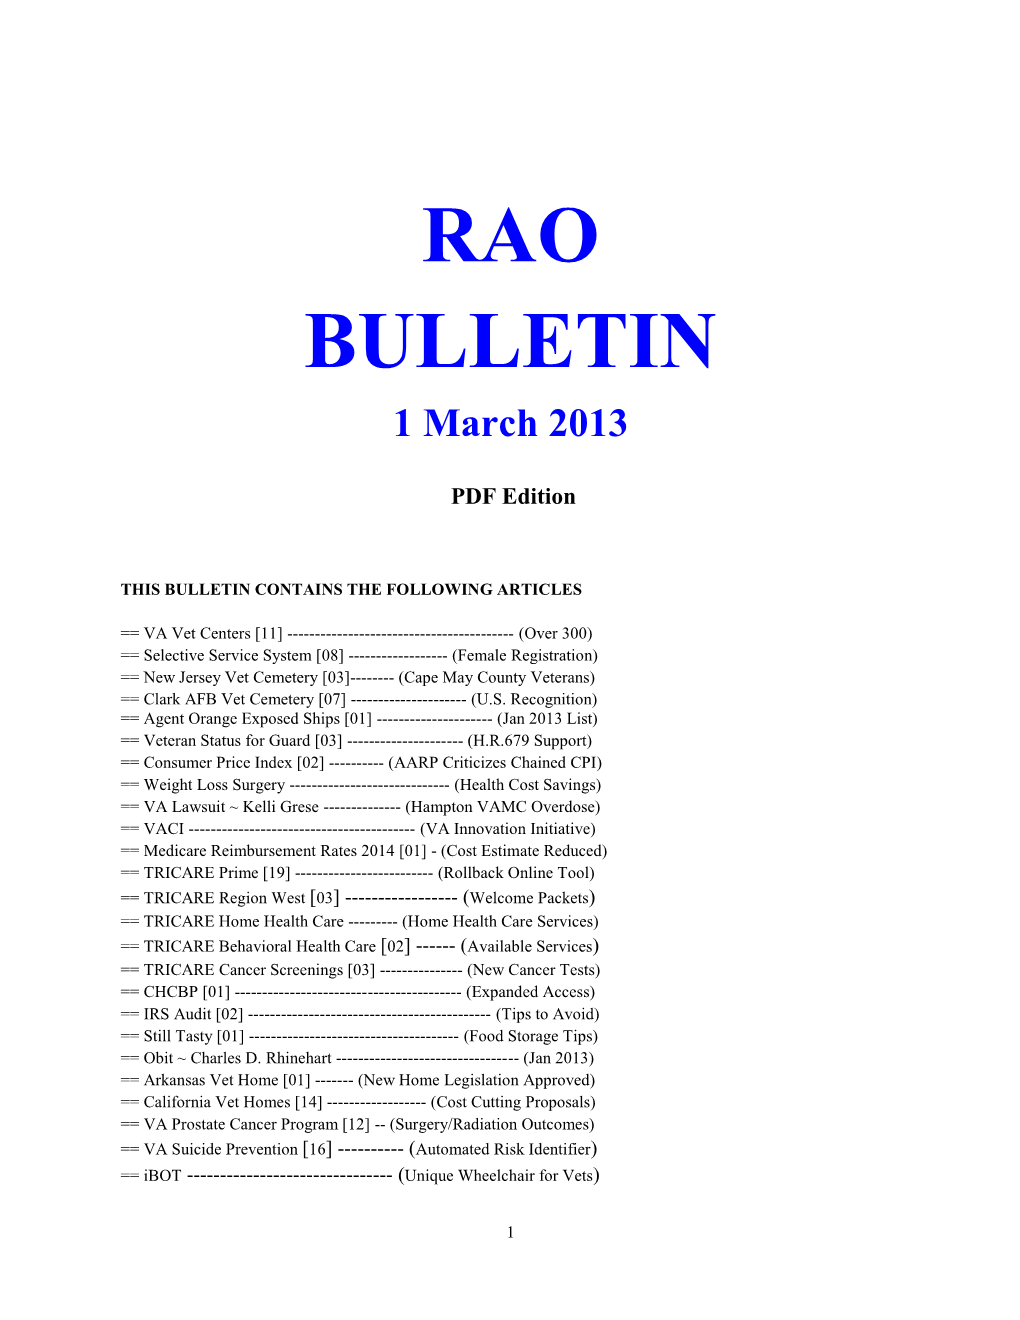 Bulletin 130301 PDF Edition